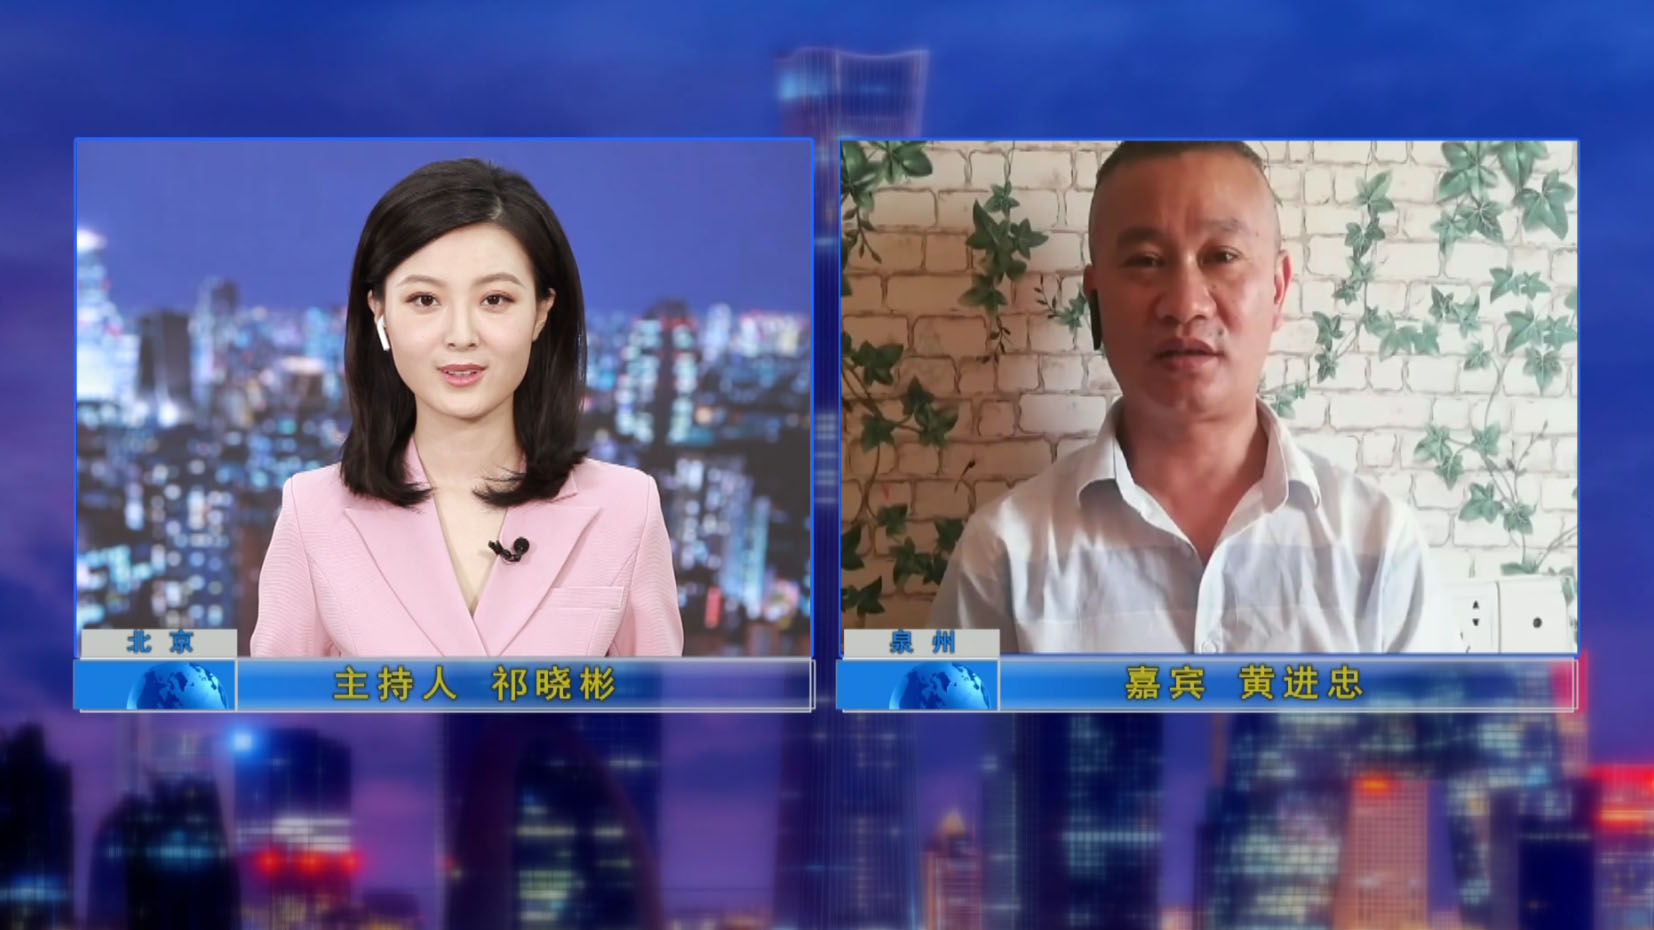 El gerente general fue entrevistado por el programa de televisión "Credit China"